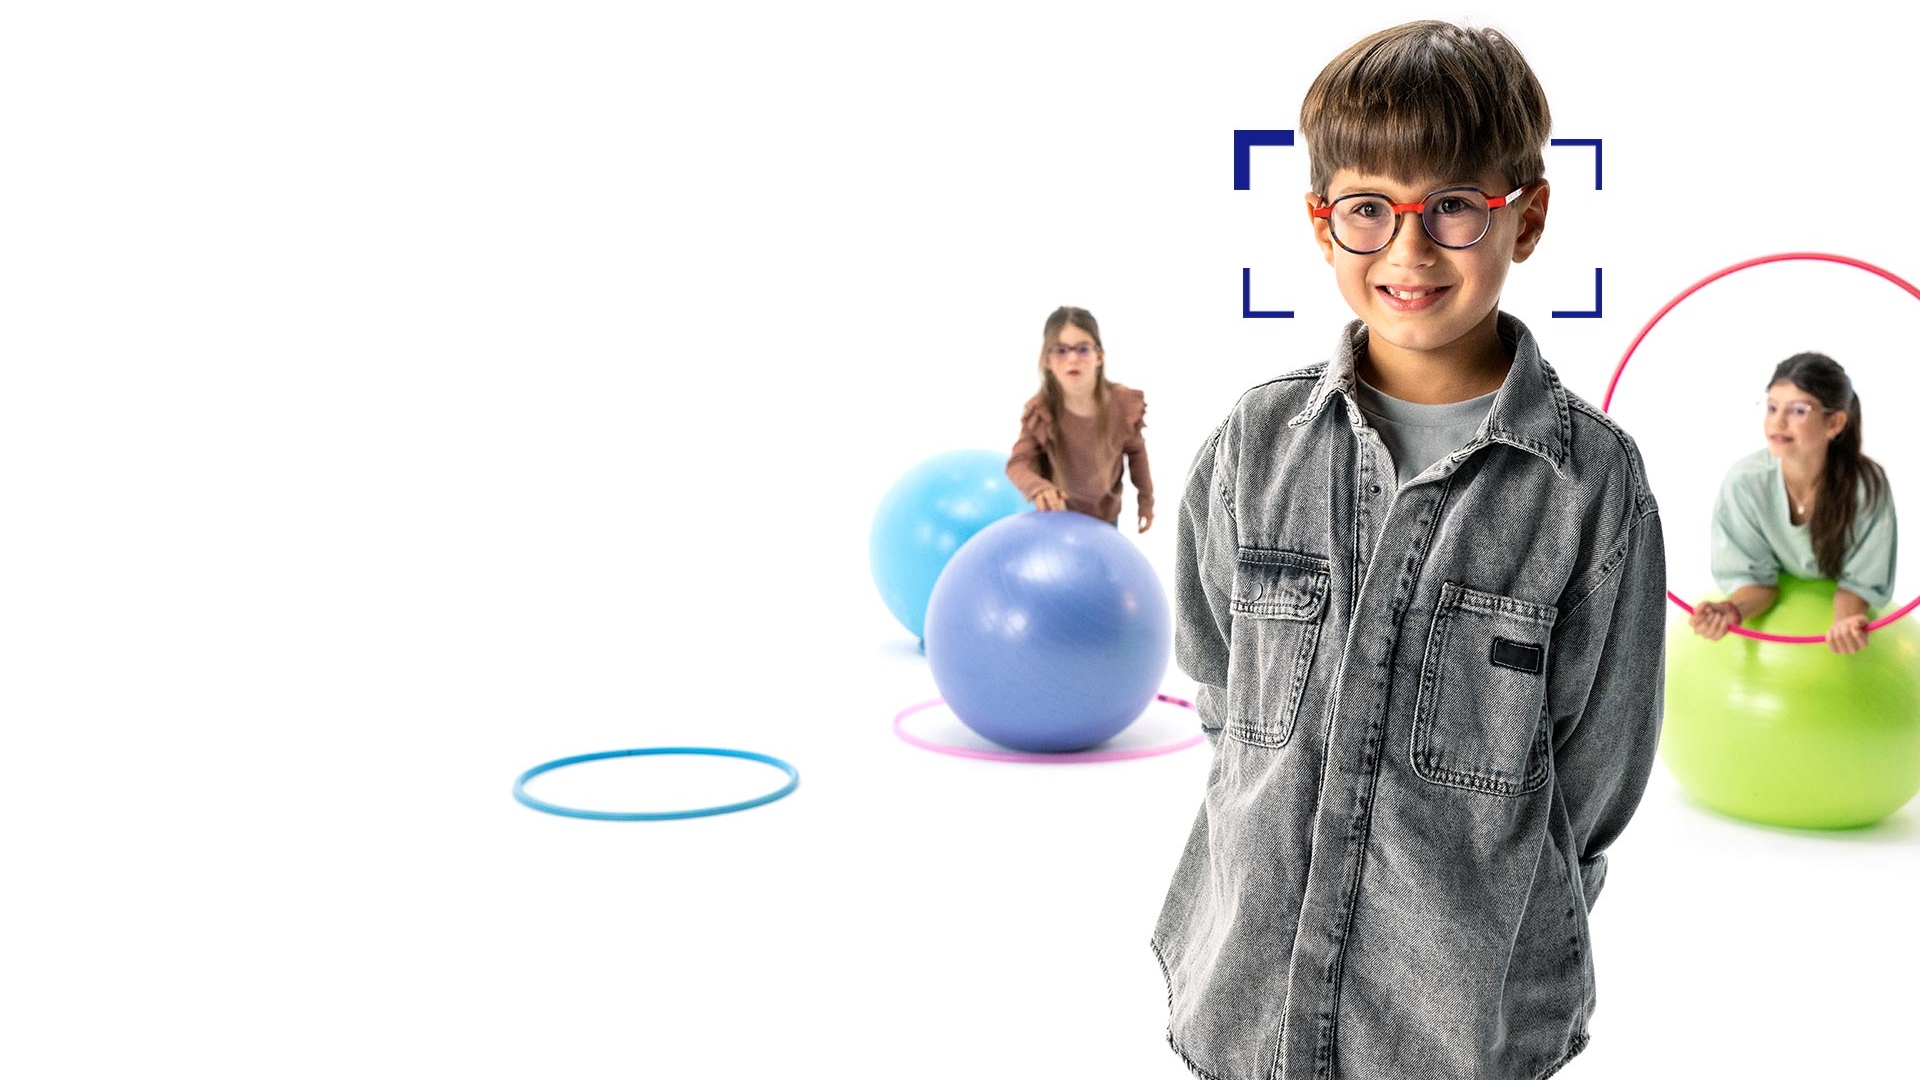 Un garçon aux cheveux marrons avec des lunettes rondes qui porte des verres ZEISS MyoCare est debout au premier plan et sourit pour la photo. À l’arrière-plan, deux filles portant des verres ZEISS MyoCare jouent avec des cerceaux et des ballons de gymnastique.